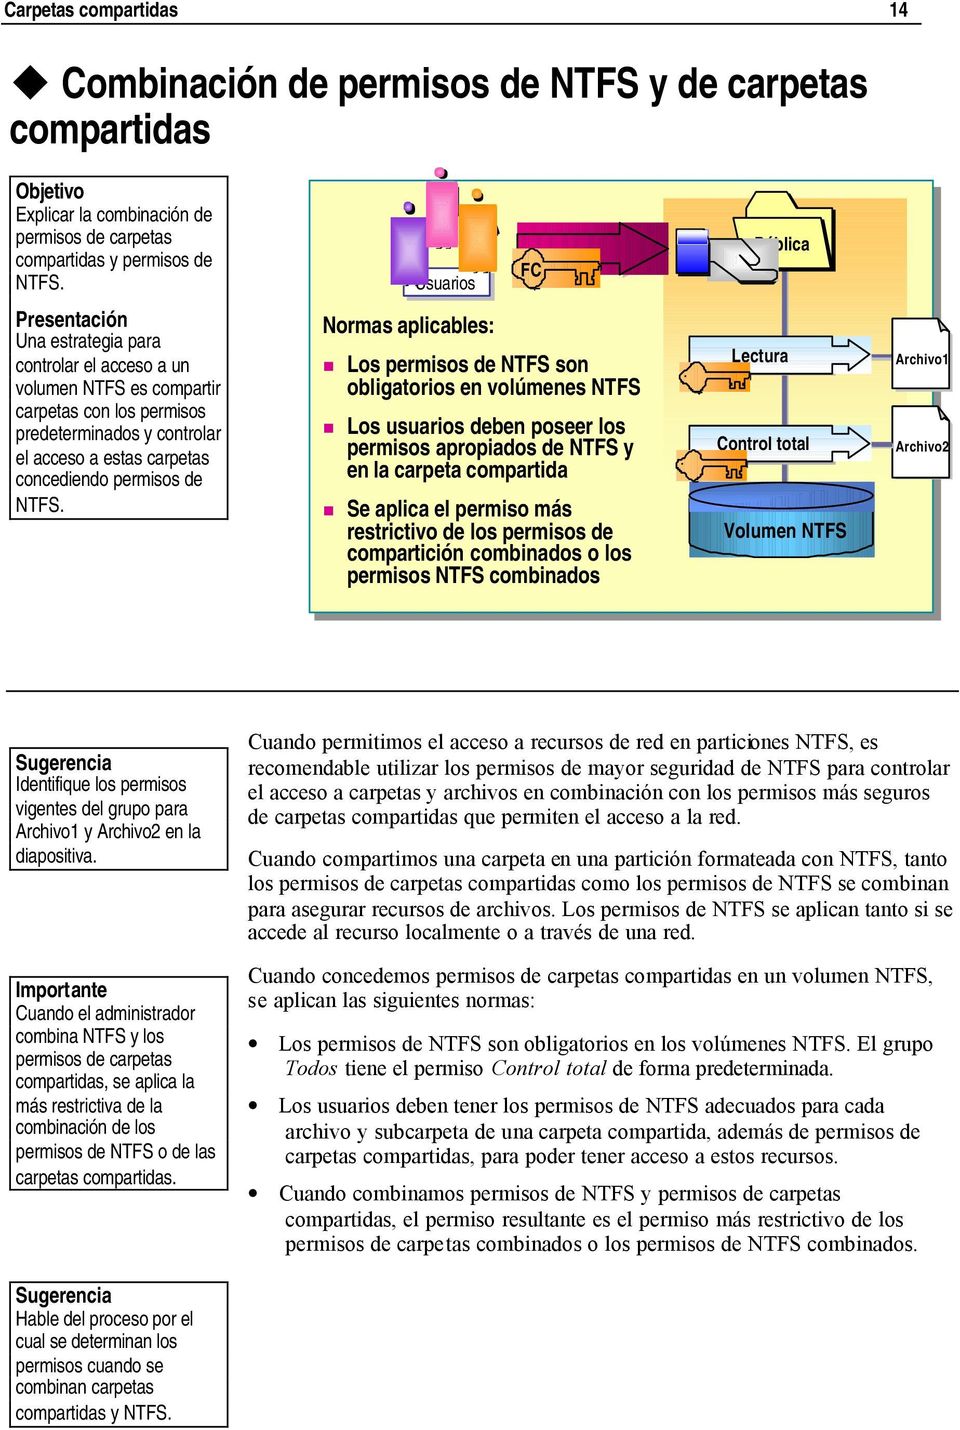 Combinación de permisos de NTFS y de carpetas compartidas Usuarios Normas aplicables: FC Los permisos de NTFS son obligatorios en volúmenes NTFS Los usuarios deben poseer los permisos apropiados de